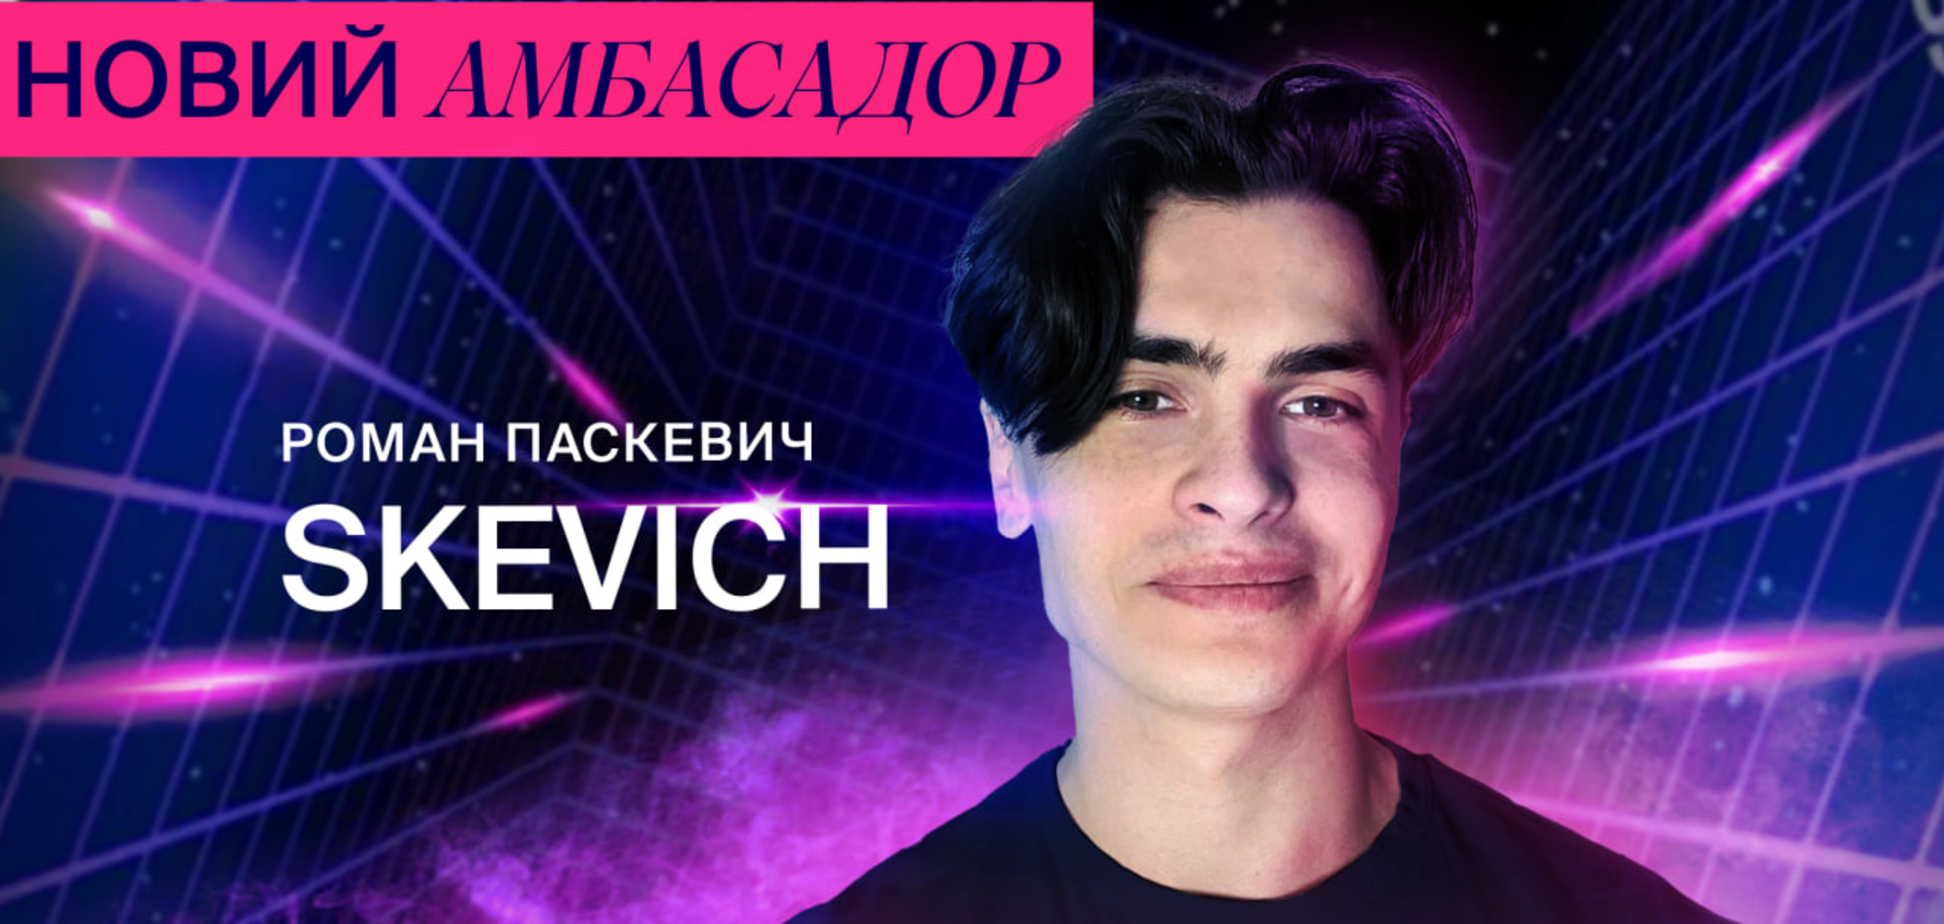 Український голос Dota 2 Роман Паскевич став кіберамбасадором Favbet